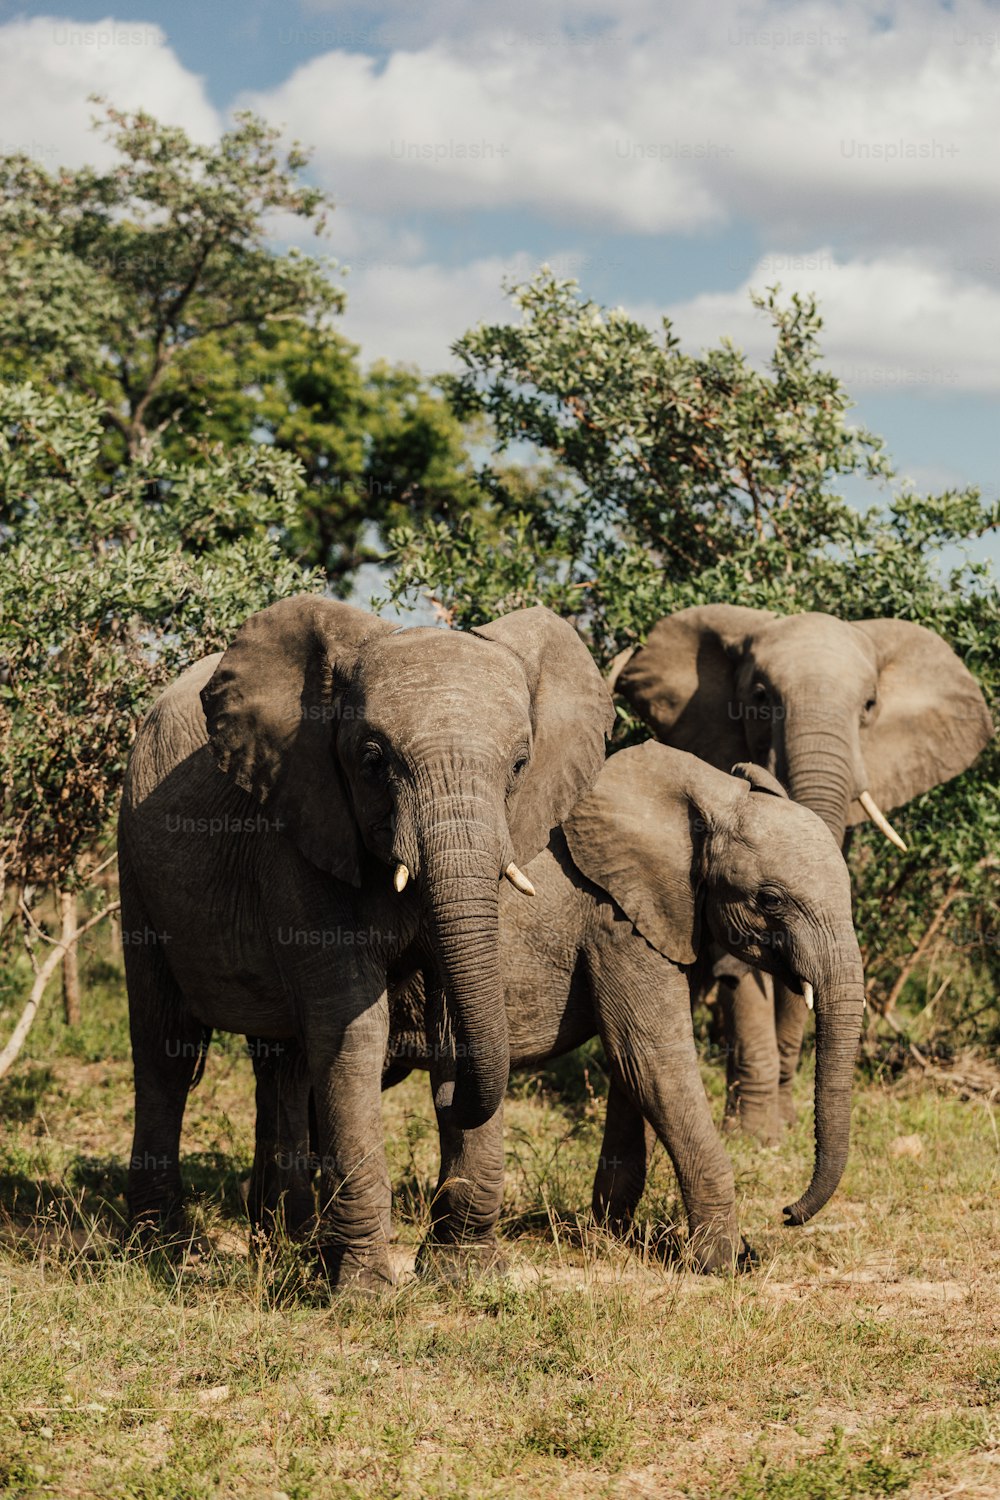 Eine Gruppe Elefanten steht auf einem grasbewachsenen Feld